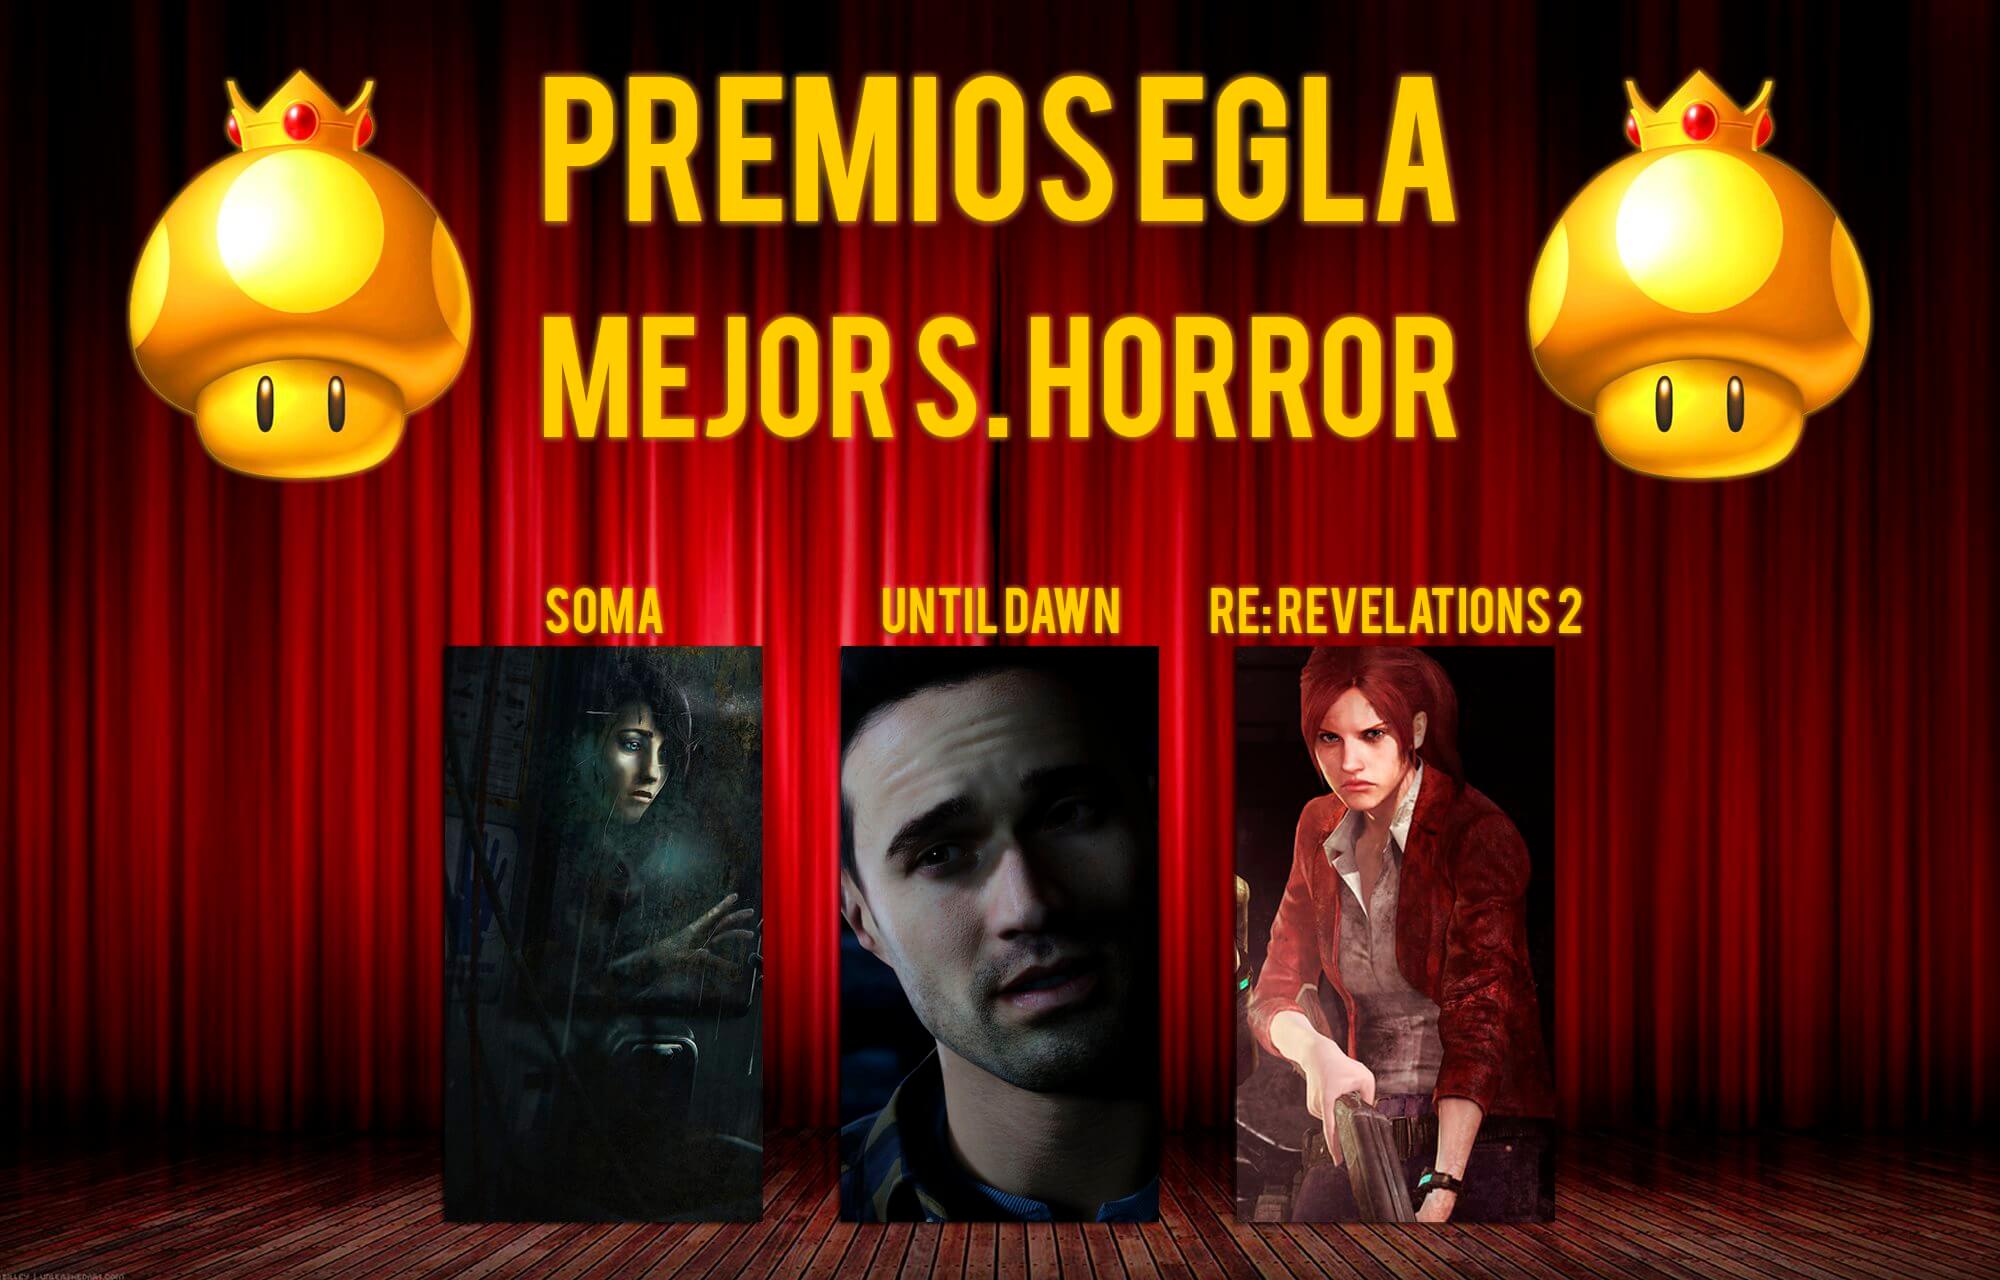 Premios EGLA 2015 Mejor Survival Horror